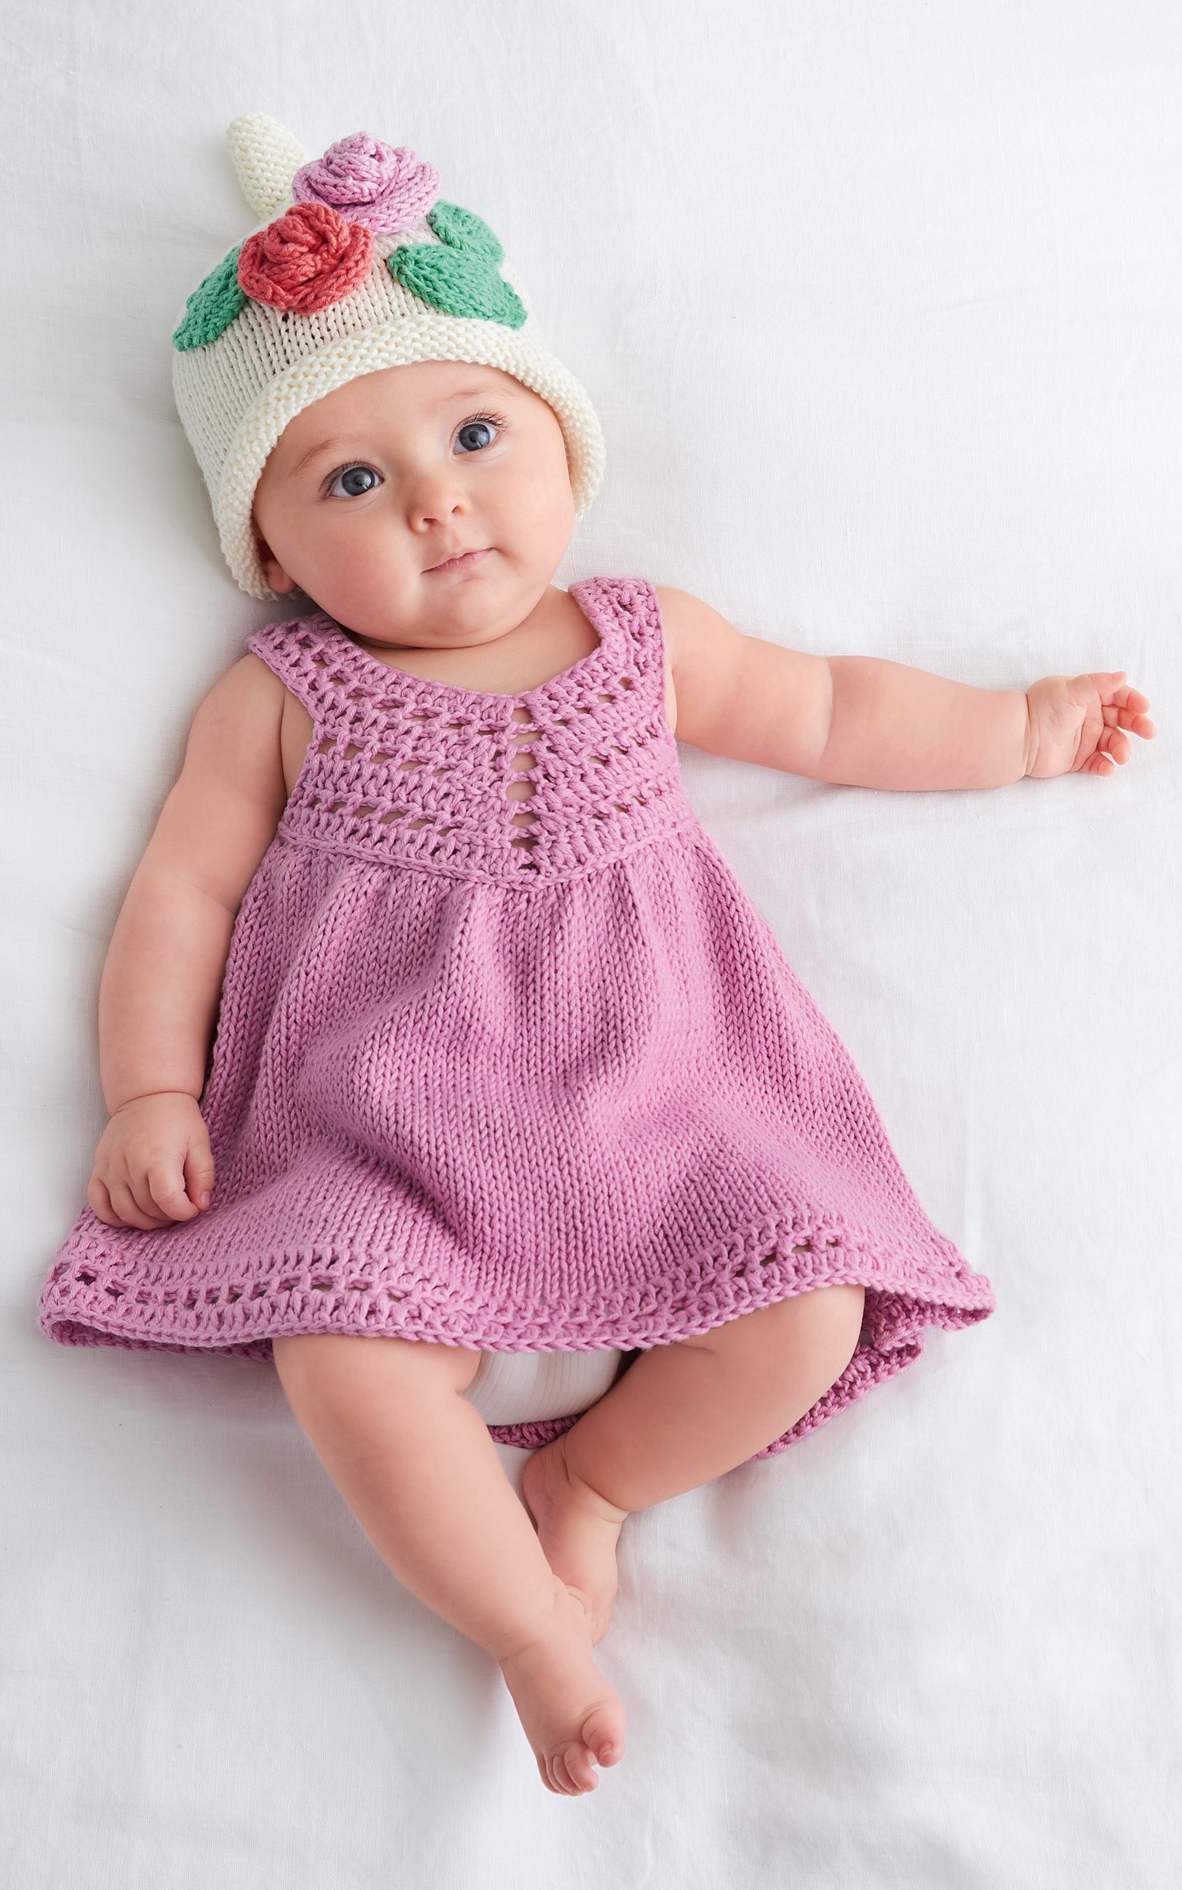 Baby Trägerkleidchen - Strickset von LANA GROSSA jetzt online kaufen bei OONIQUE